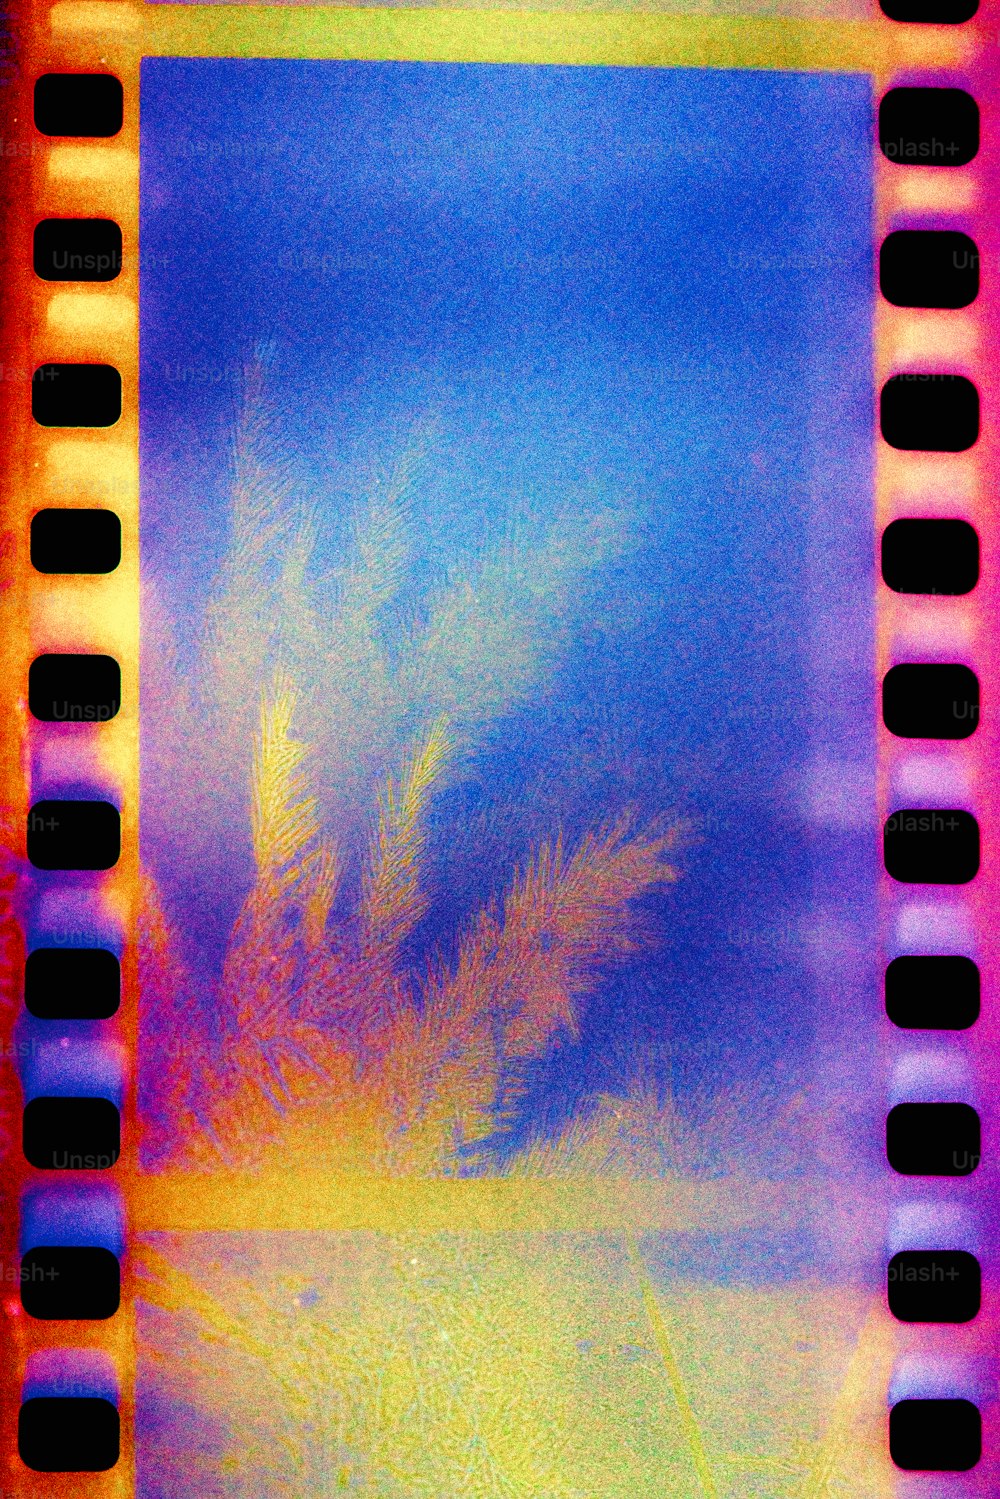 una striscia di pellicola con l'immagine di una palma